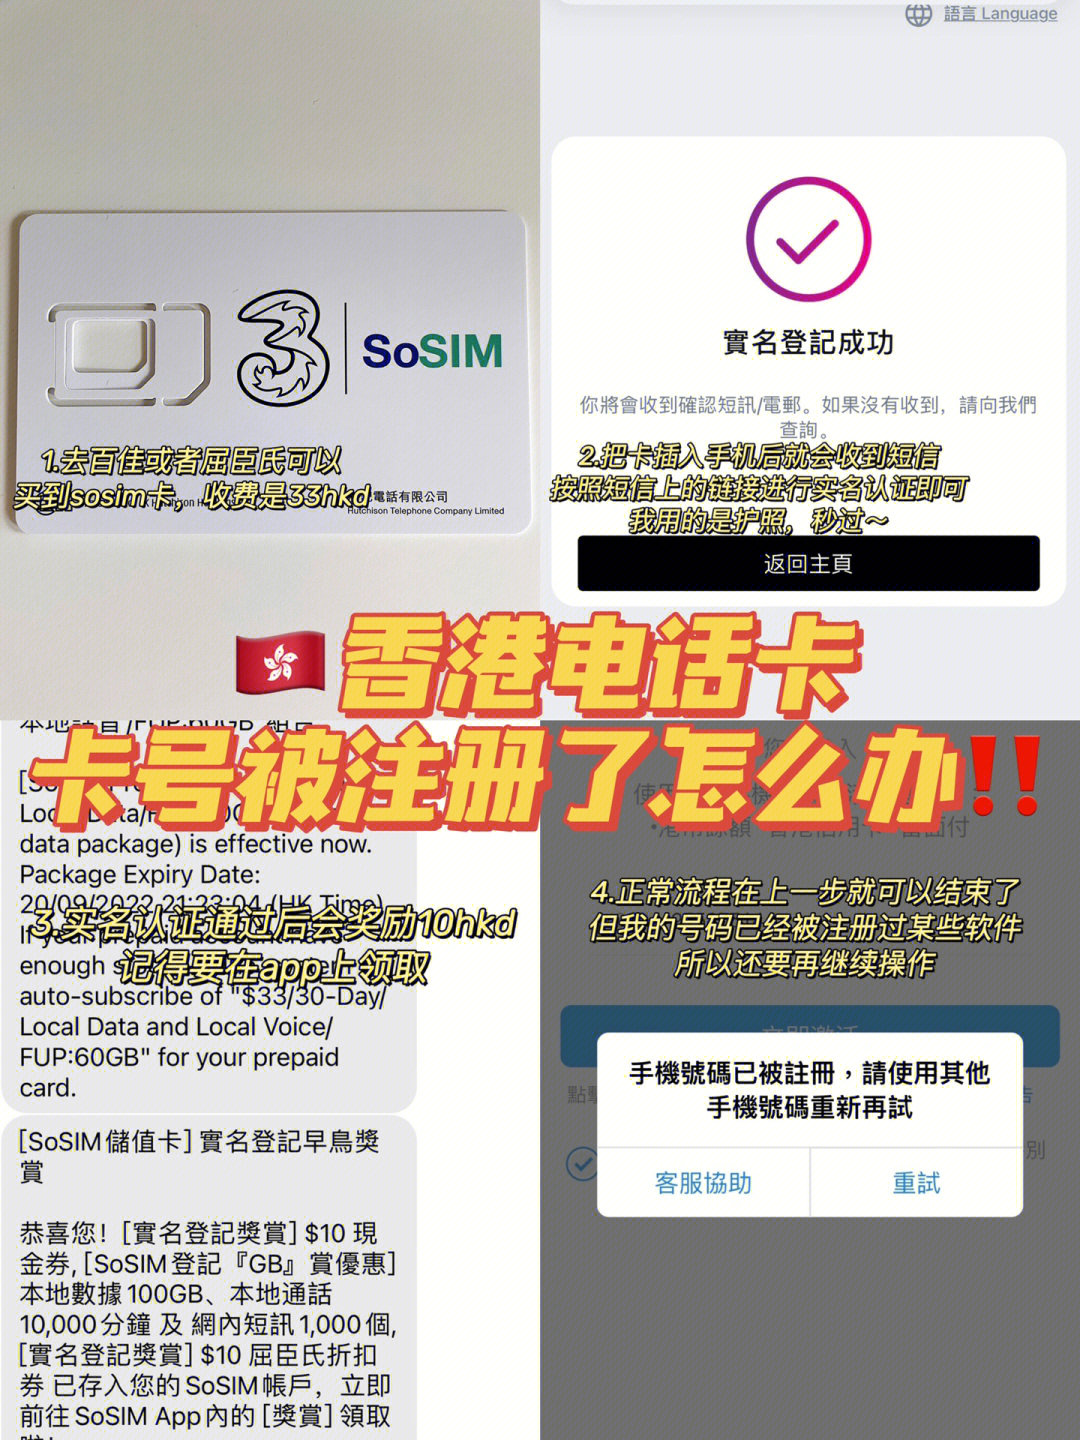 香港留学sosim手机卡购买和实名认证tips